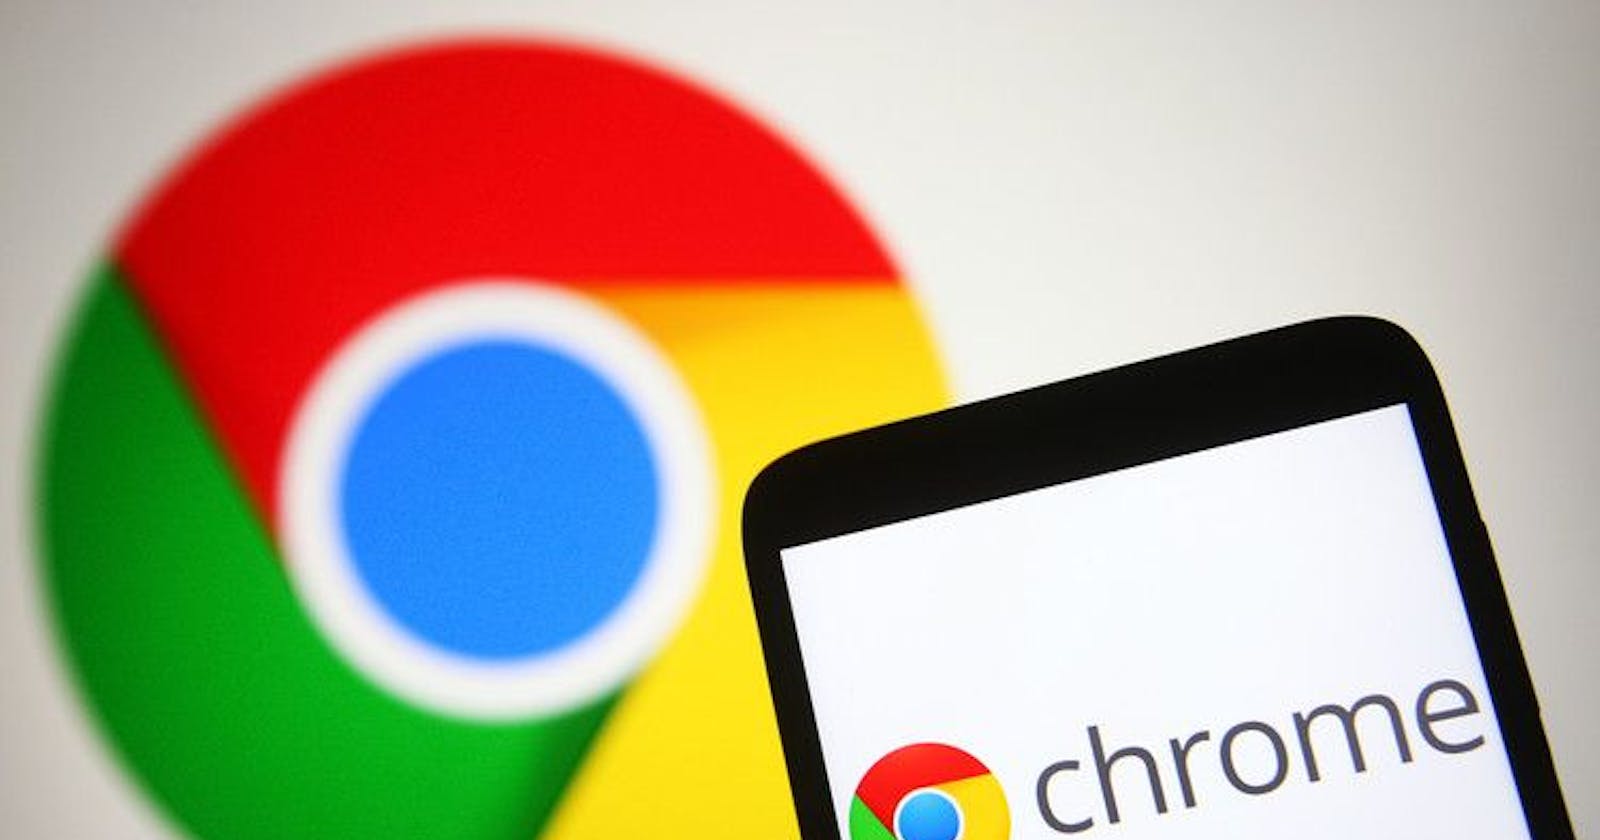 Google Chrome User Guide For Mobile